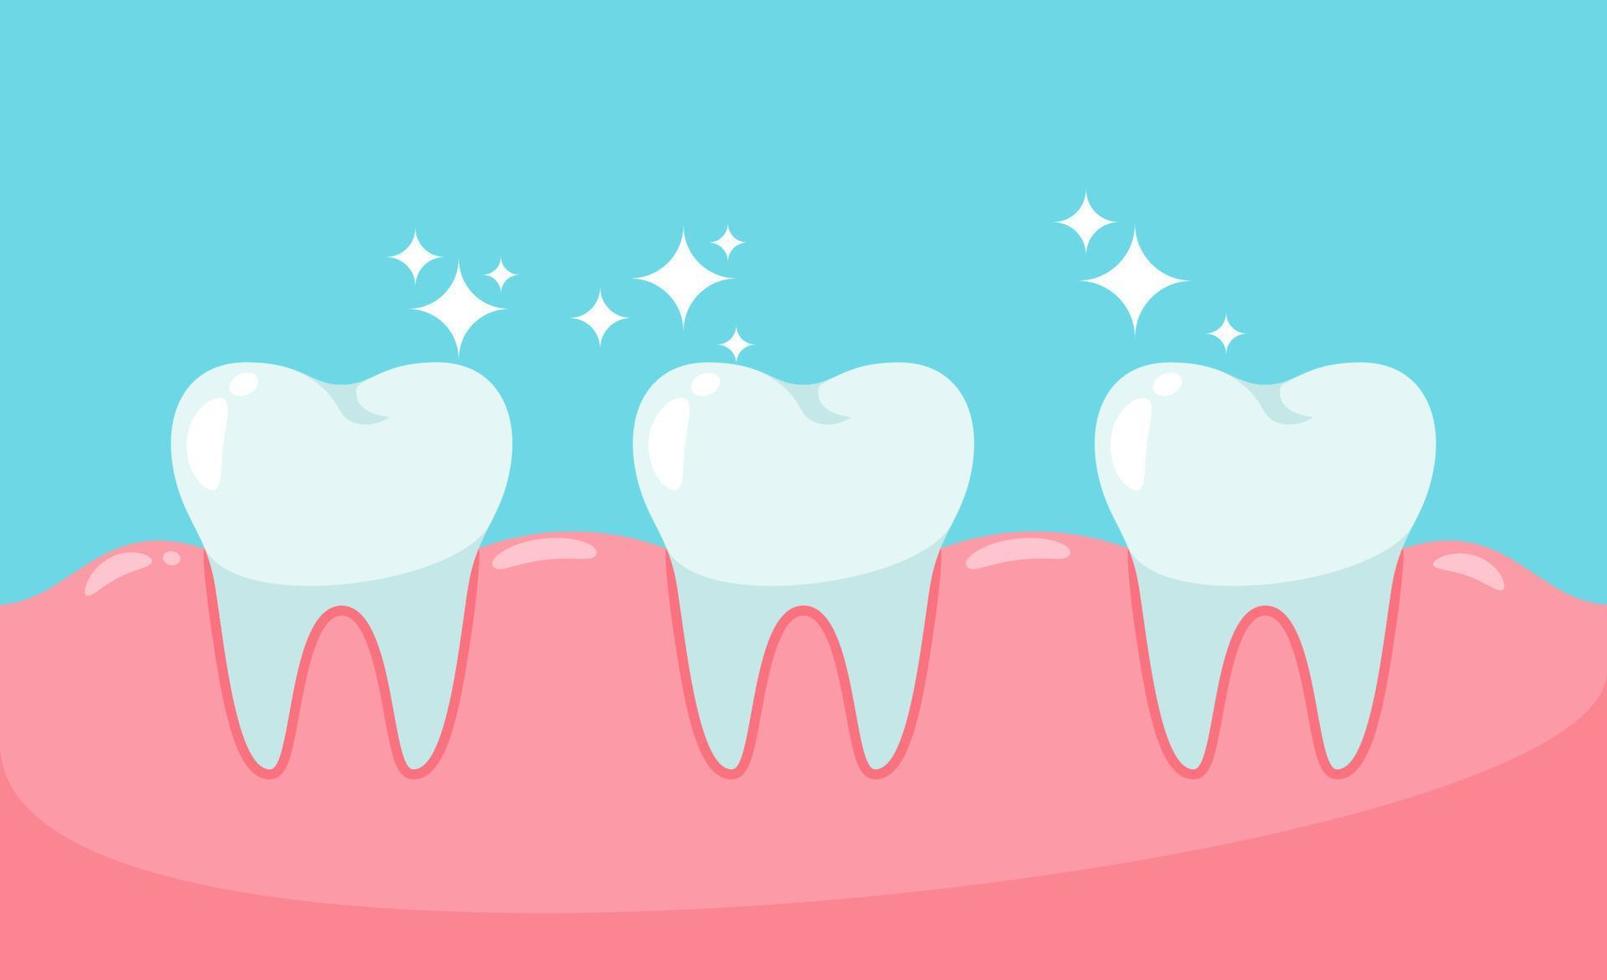 dentes e gengivas saudáveis. conceito de saúde bucal. vetor